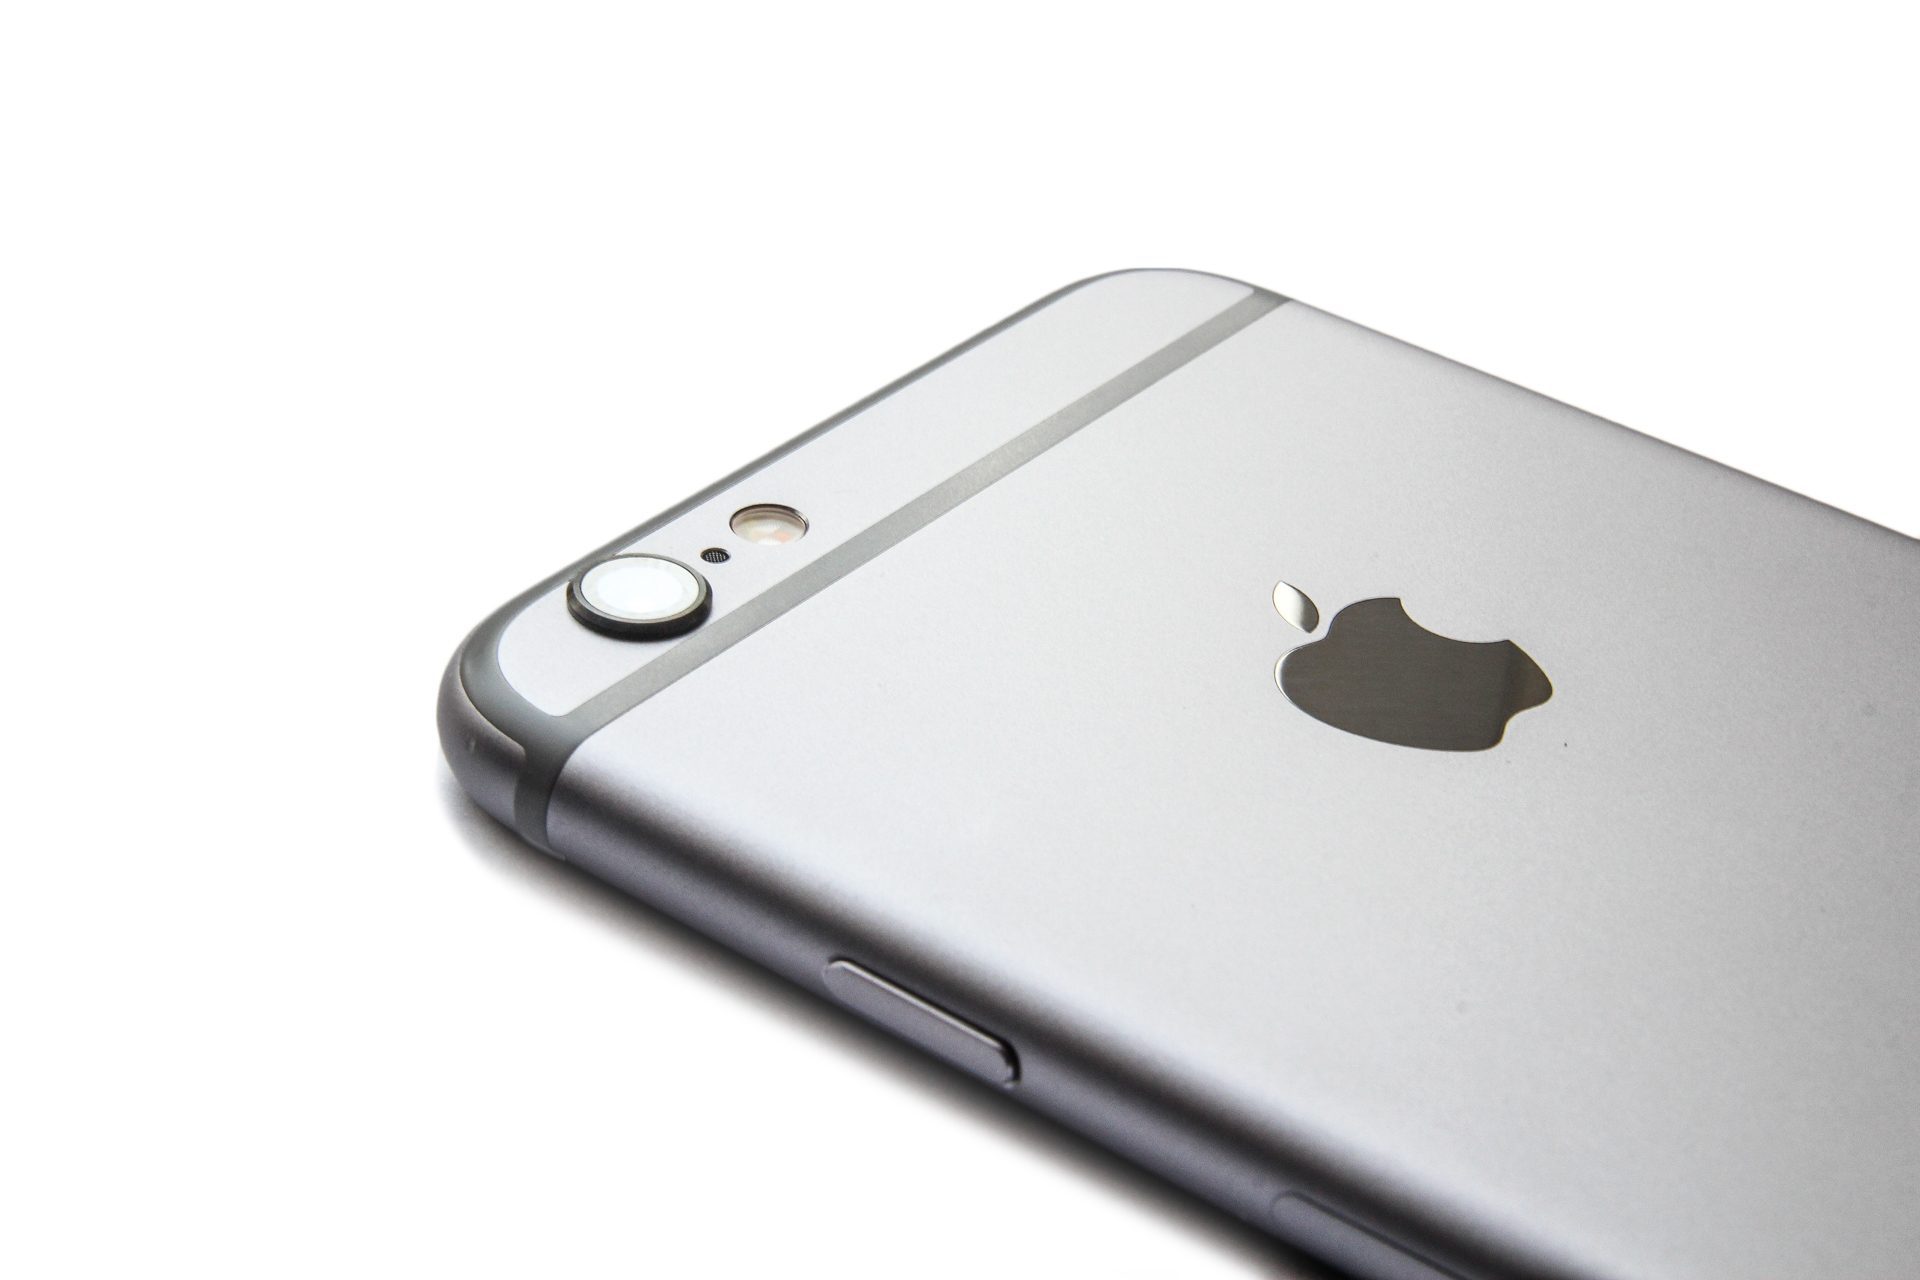 Kunstmatig Attent Vleien iPhone 6 kopen met abonnement, prijzen en aanbiedingen vergelijken